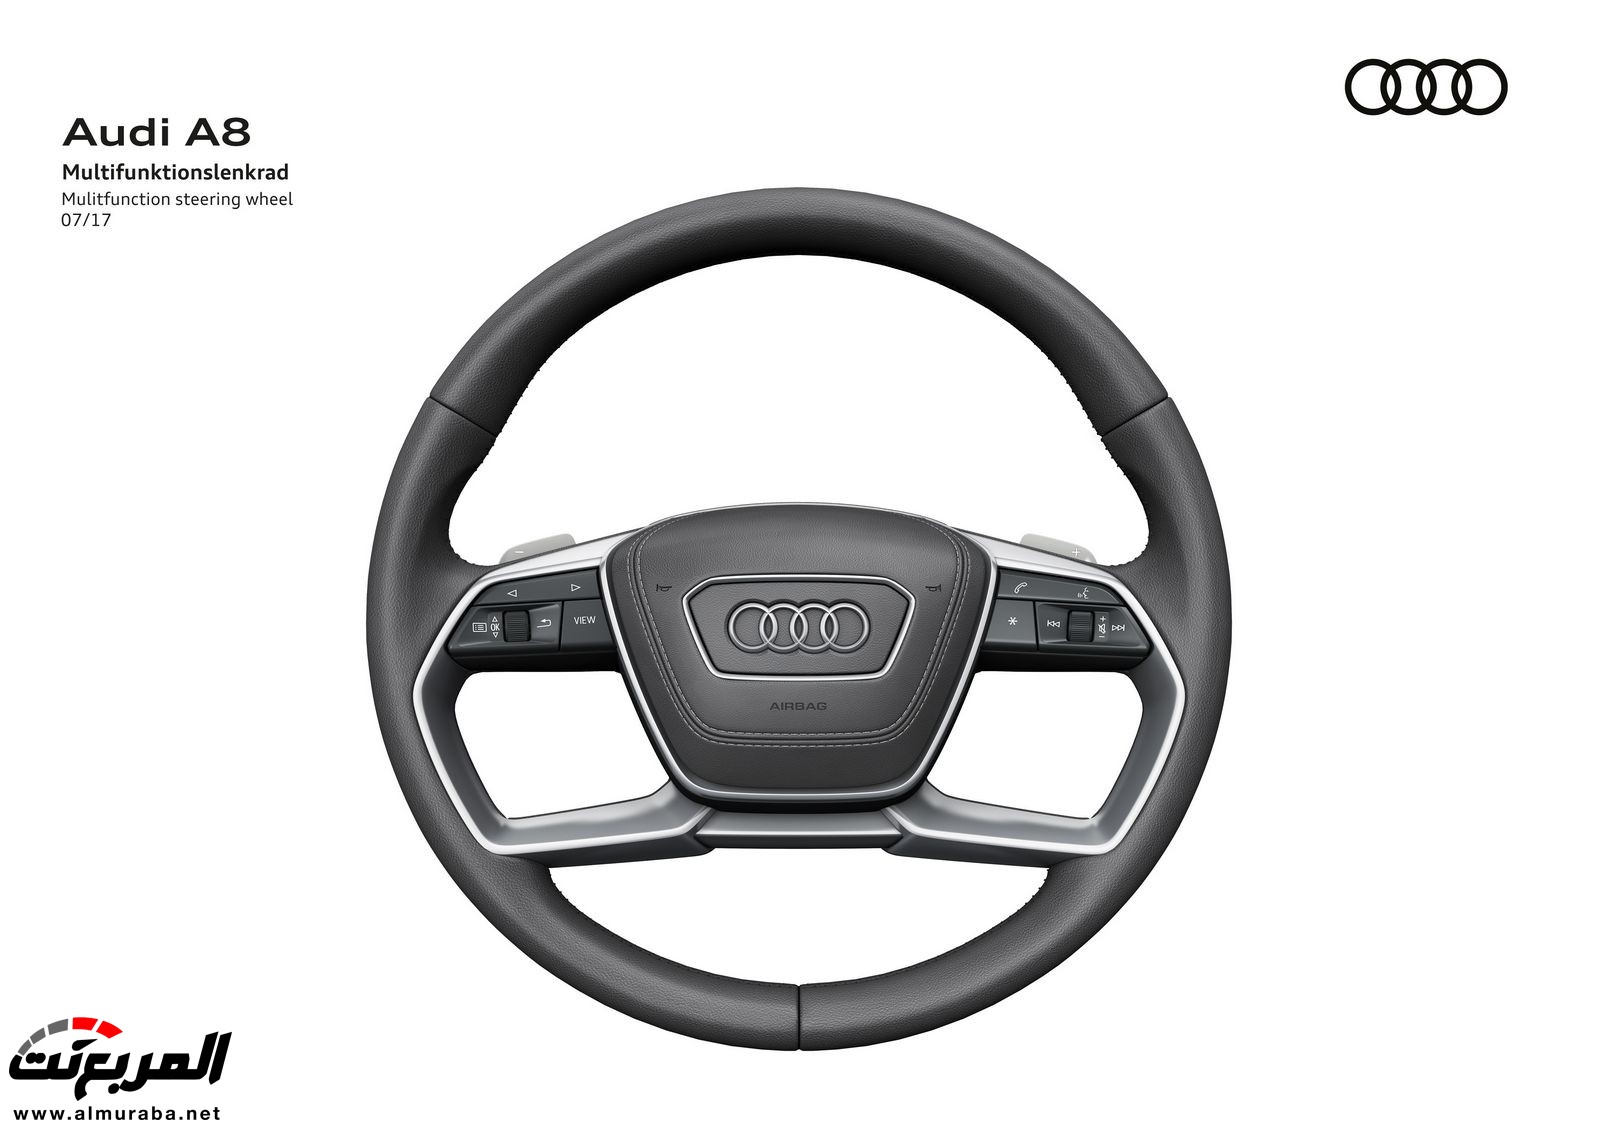 أودي A8 2018 الجديدة كلياً تكشف نفسها بتصميم وتقنيات متطورة "معلومات + 100 صورة" Audi A8 103